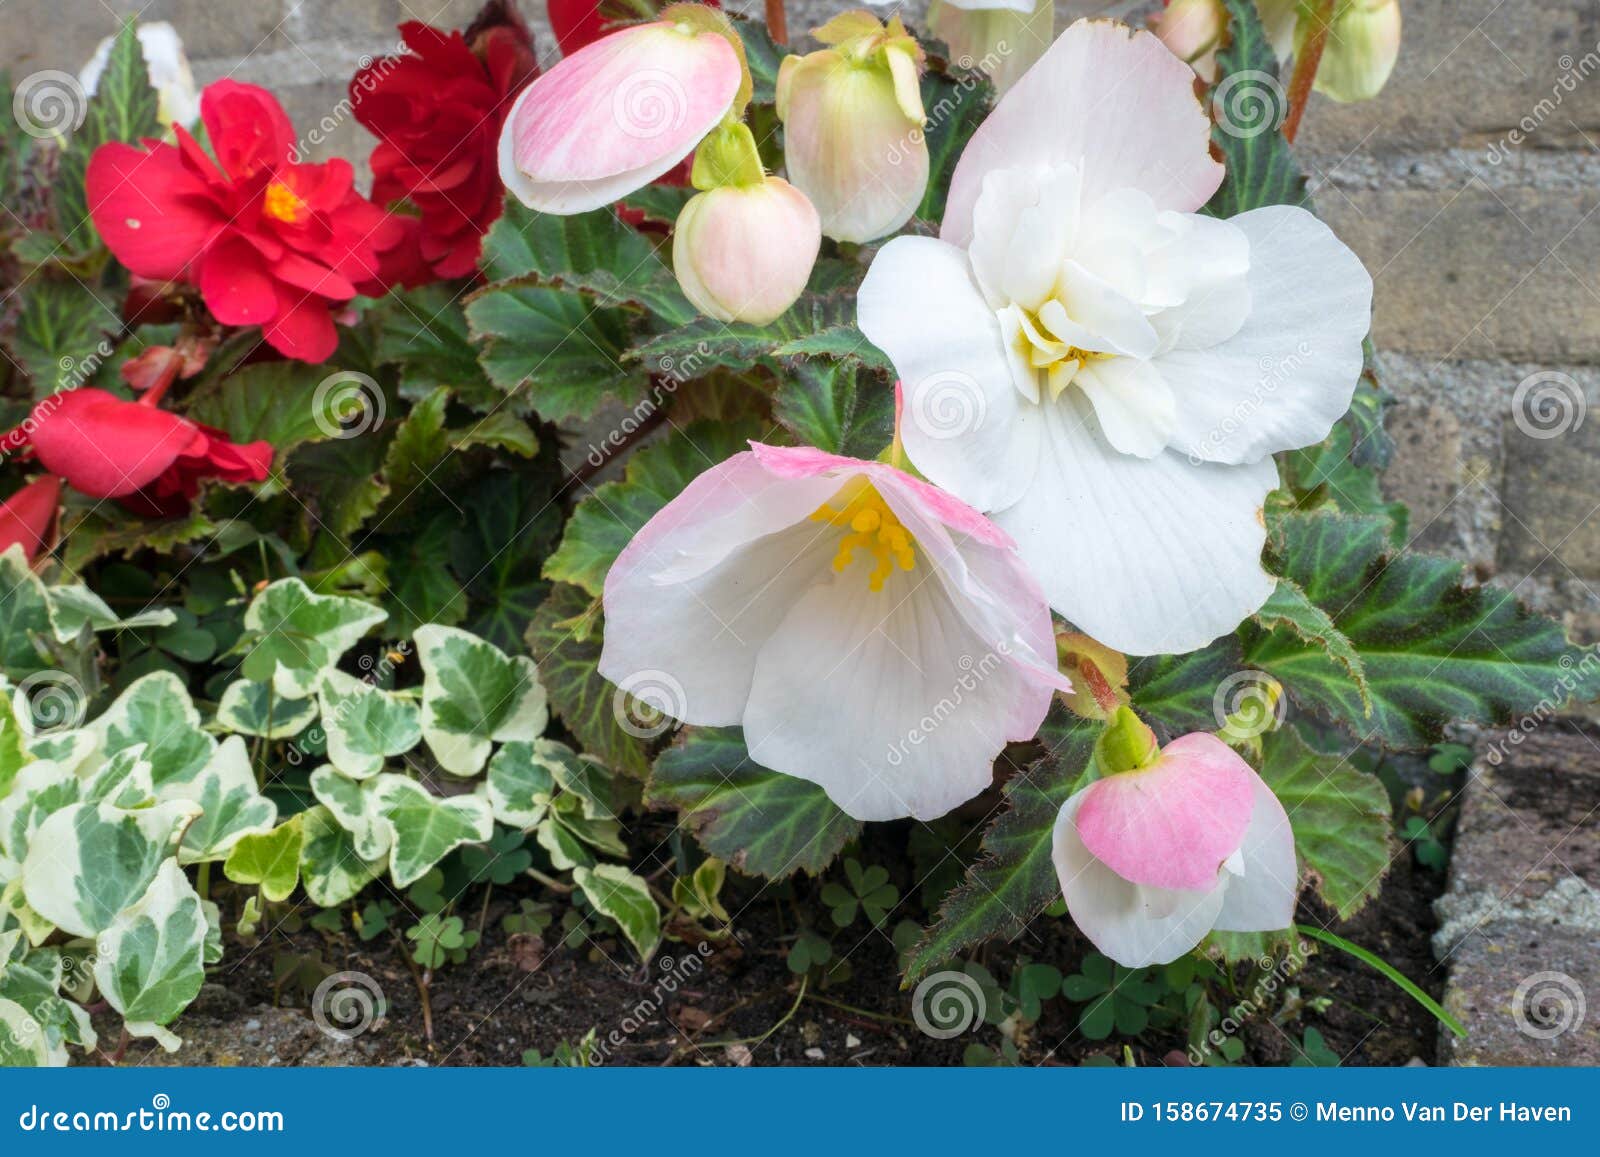 花床中花与常春藤螺旋体生长的秋海棠库存图片 图片包括有花床中花与常春藤螺旋体生长的秋海棠